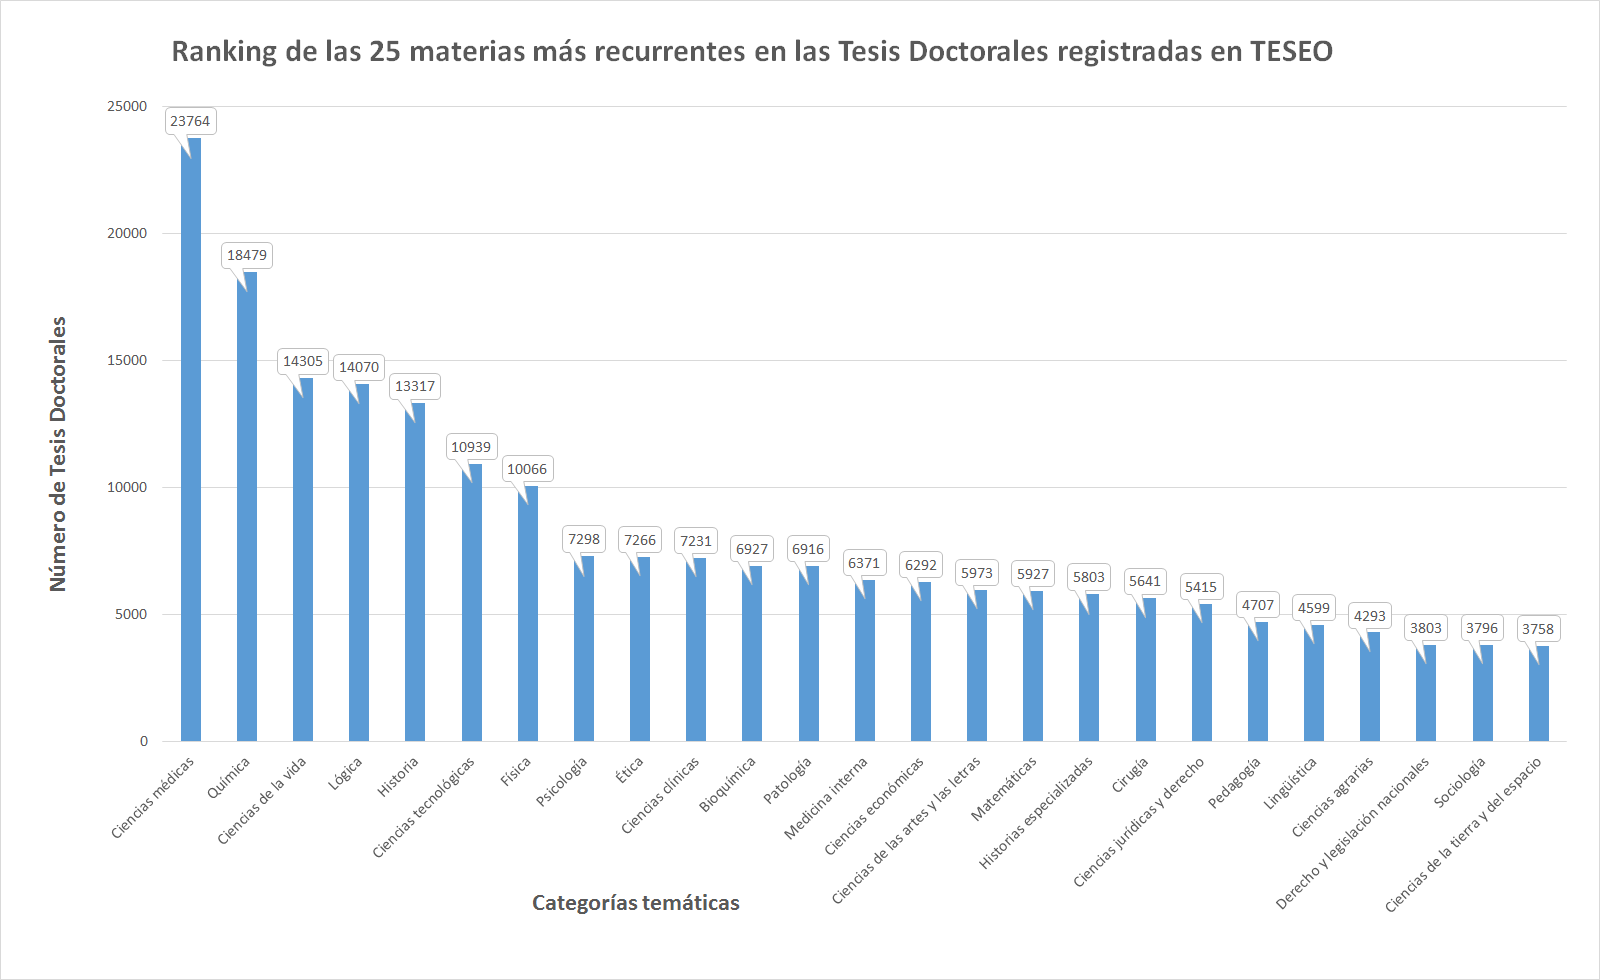 Fig.1. Ranking de las 25 materias más recurrentes en las Tesis Doctorales registradas en TESEO